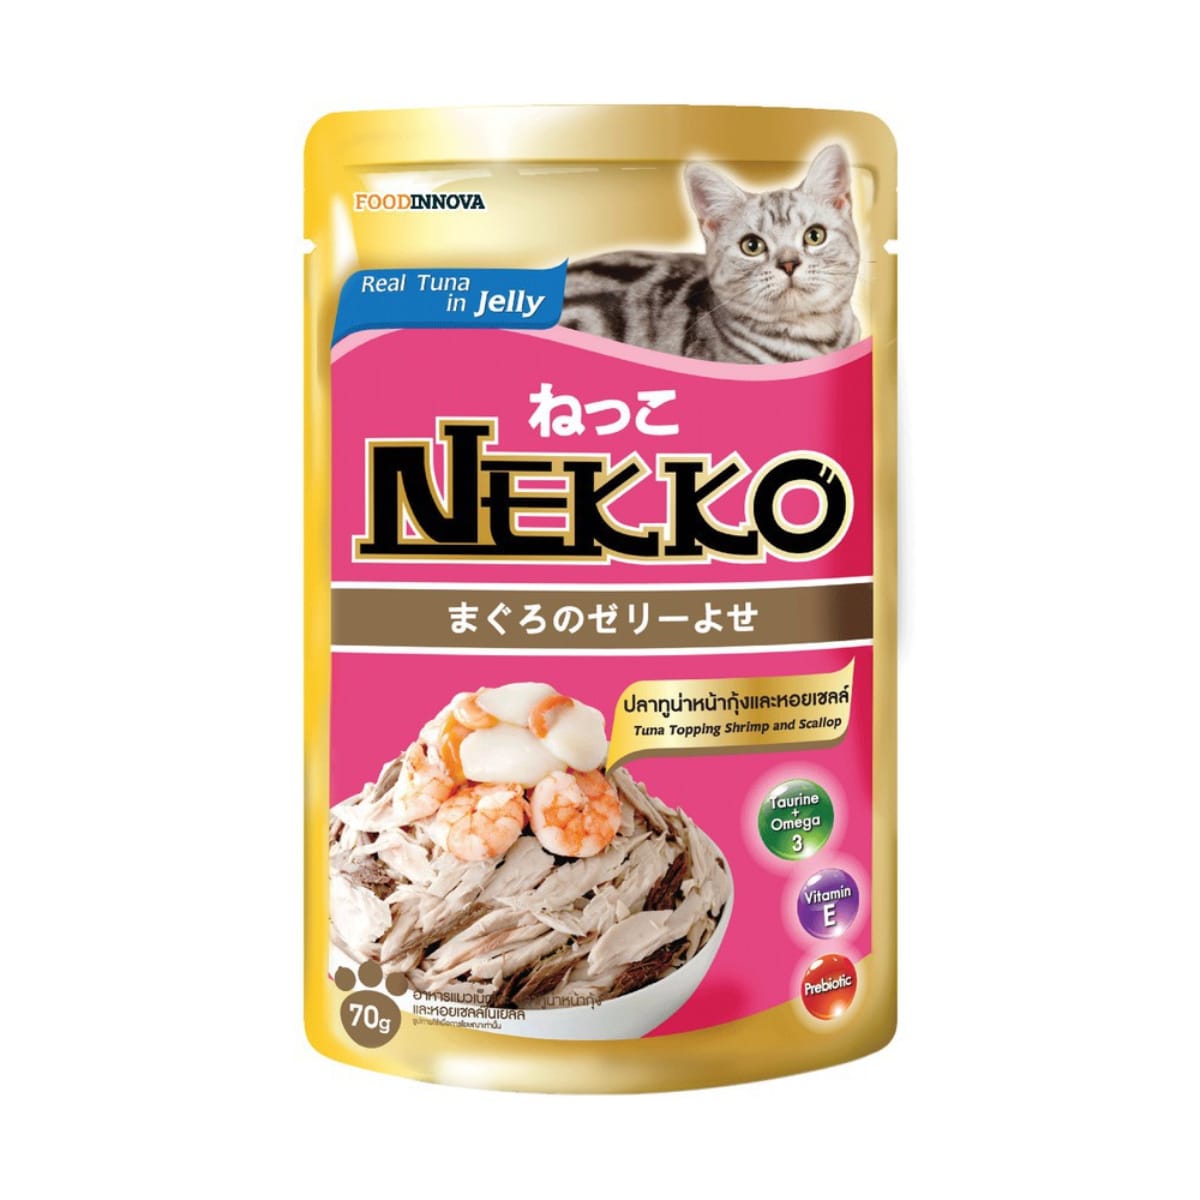 Nekko เน็กโกะ อาหารเปียก สำหรับแมว รสปลาทูน่าหน้ากุ้งและหอยเชลล์ในเยลลี่ 70 g_1